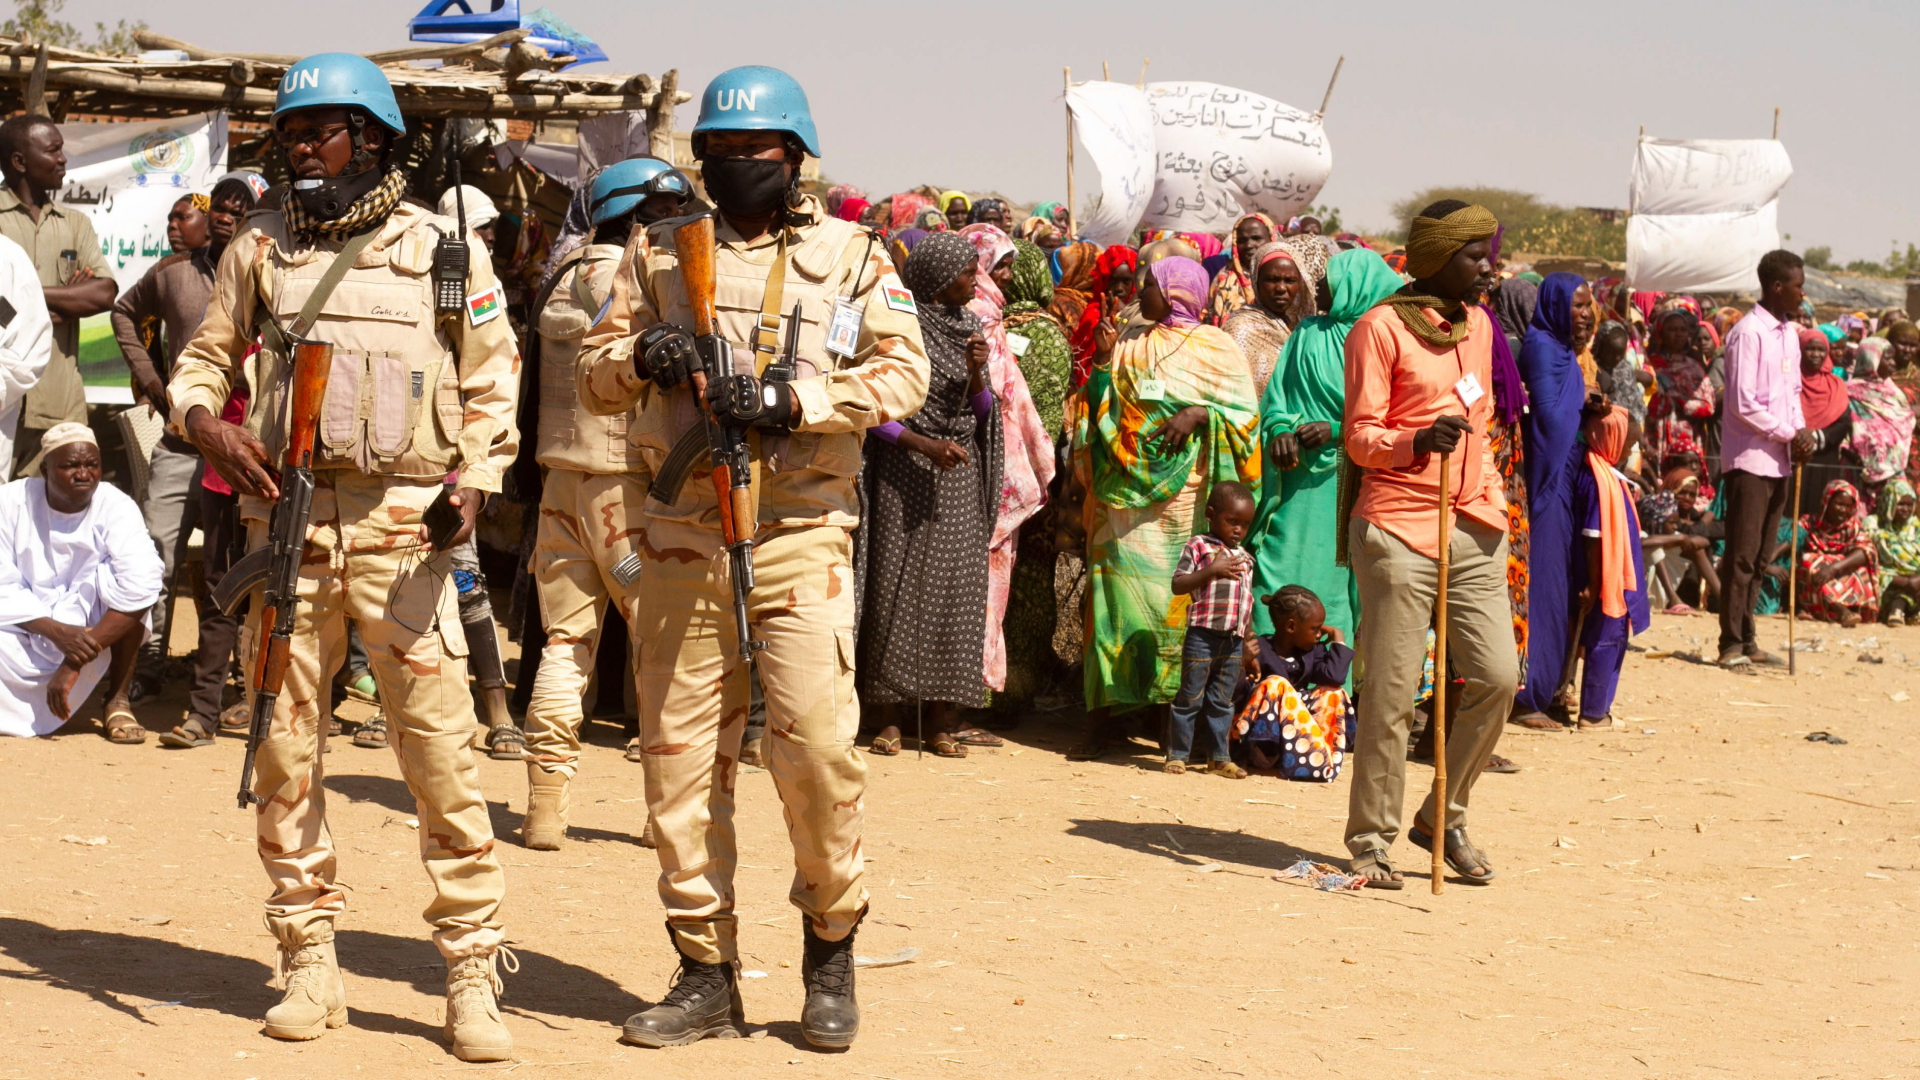 Soldaten der Unamid-Mission in Darfur beobachten Menschen, die gegen das Ende der Mission protestieren.| Bildquelle: AFP